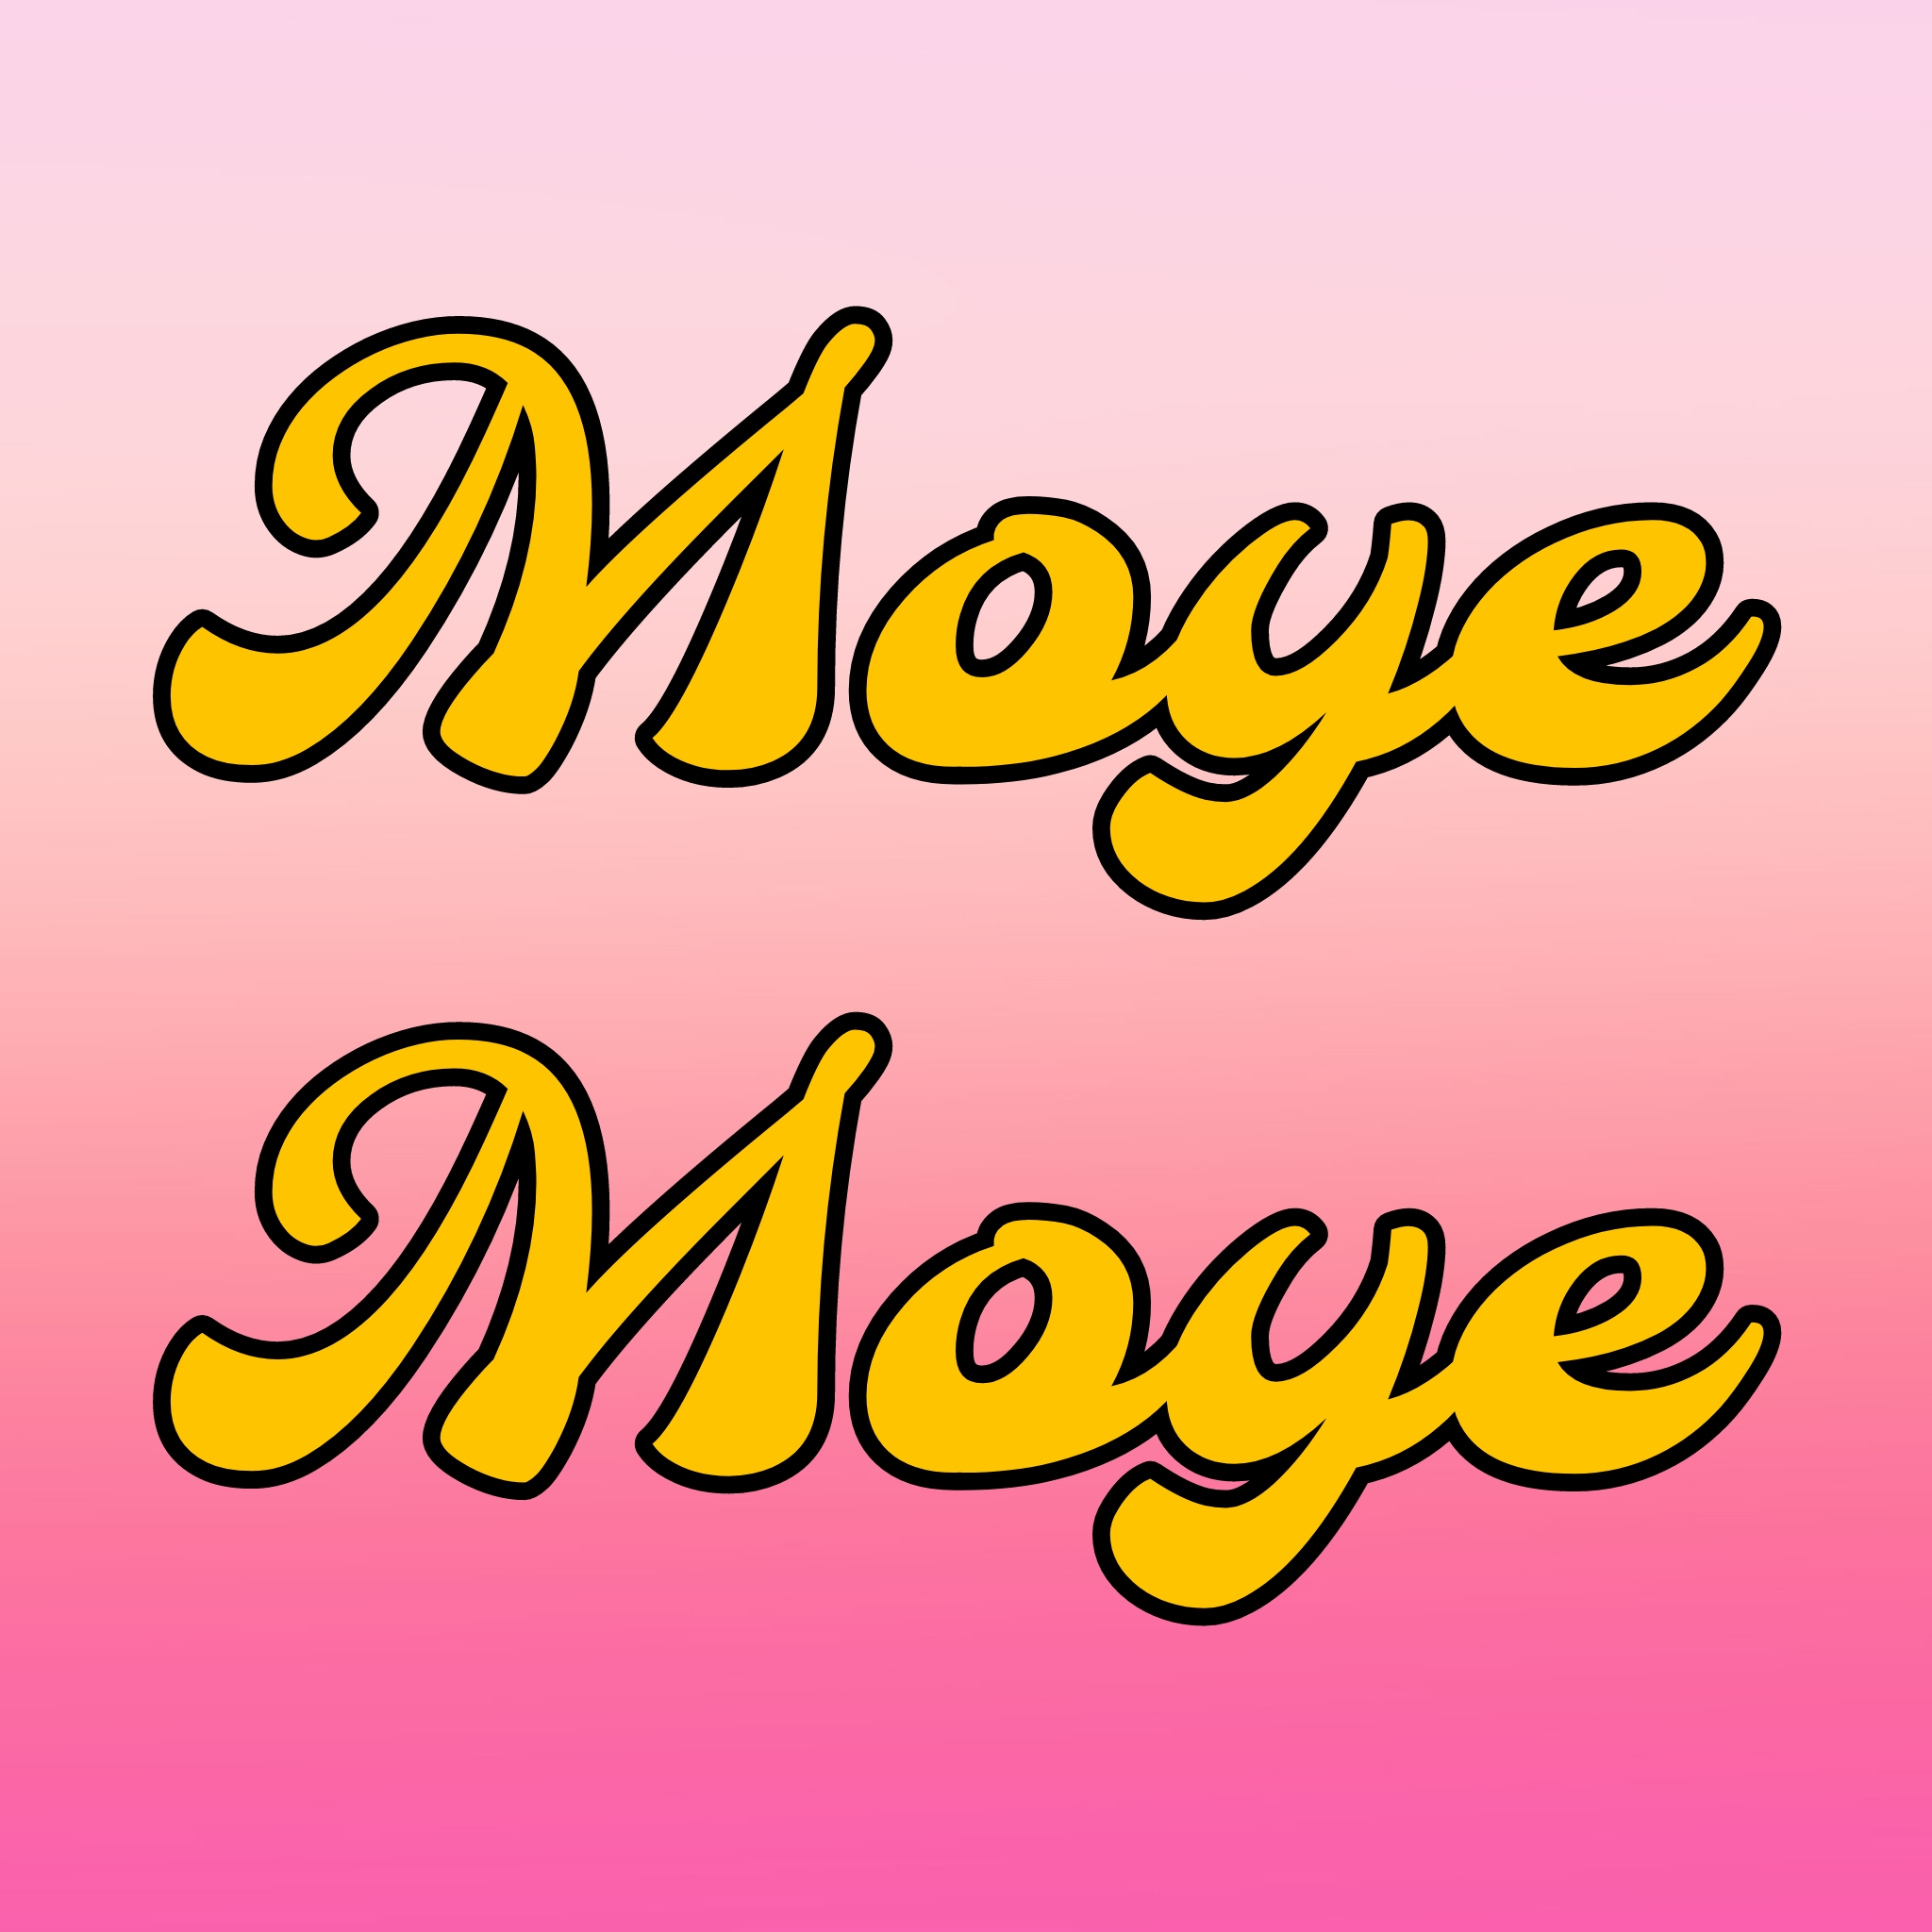 Moye Moye - The Viral Song